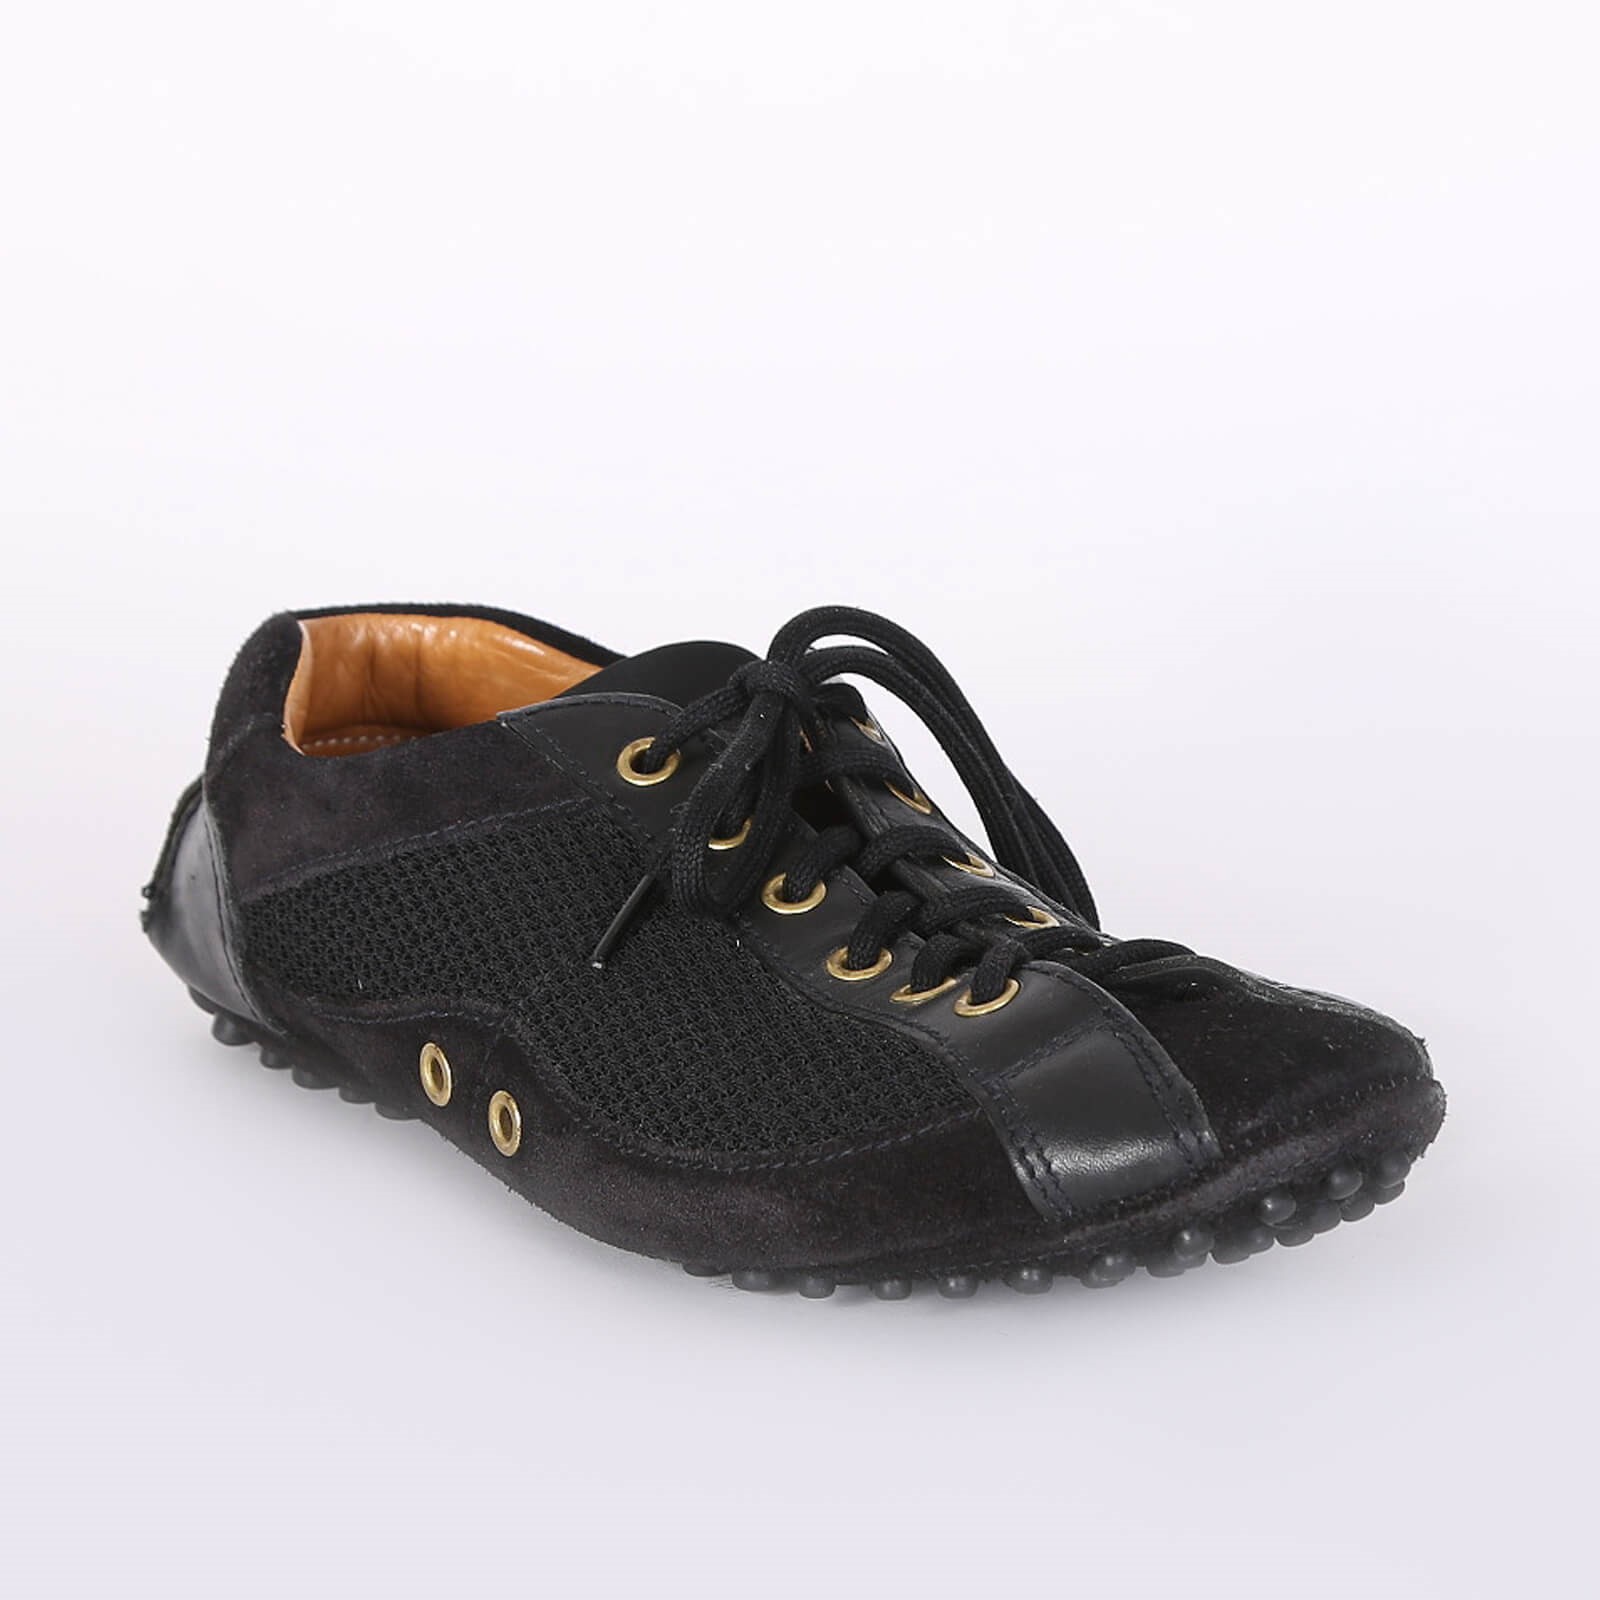 Prada - Car Shoe Leather Driving Sneakers Black 35 